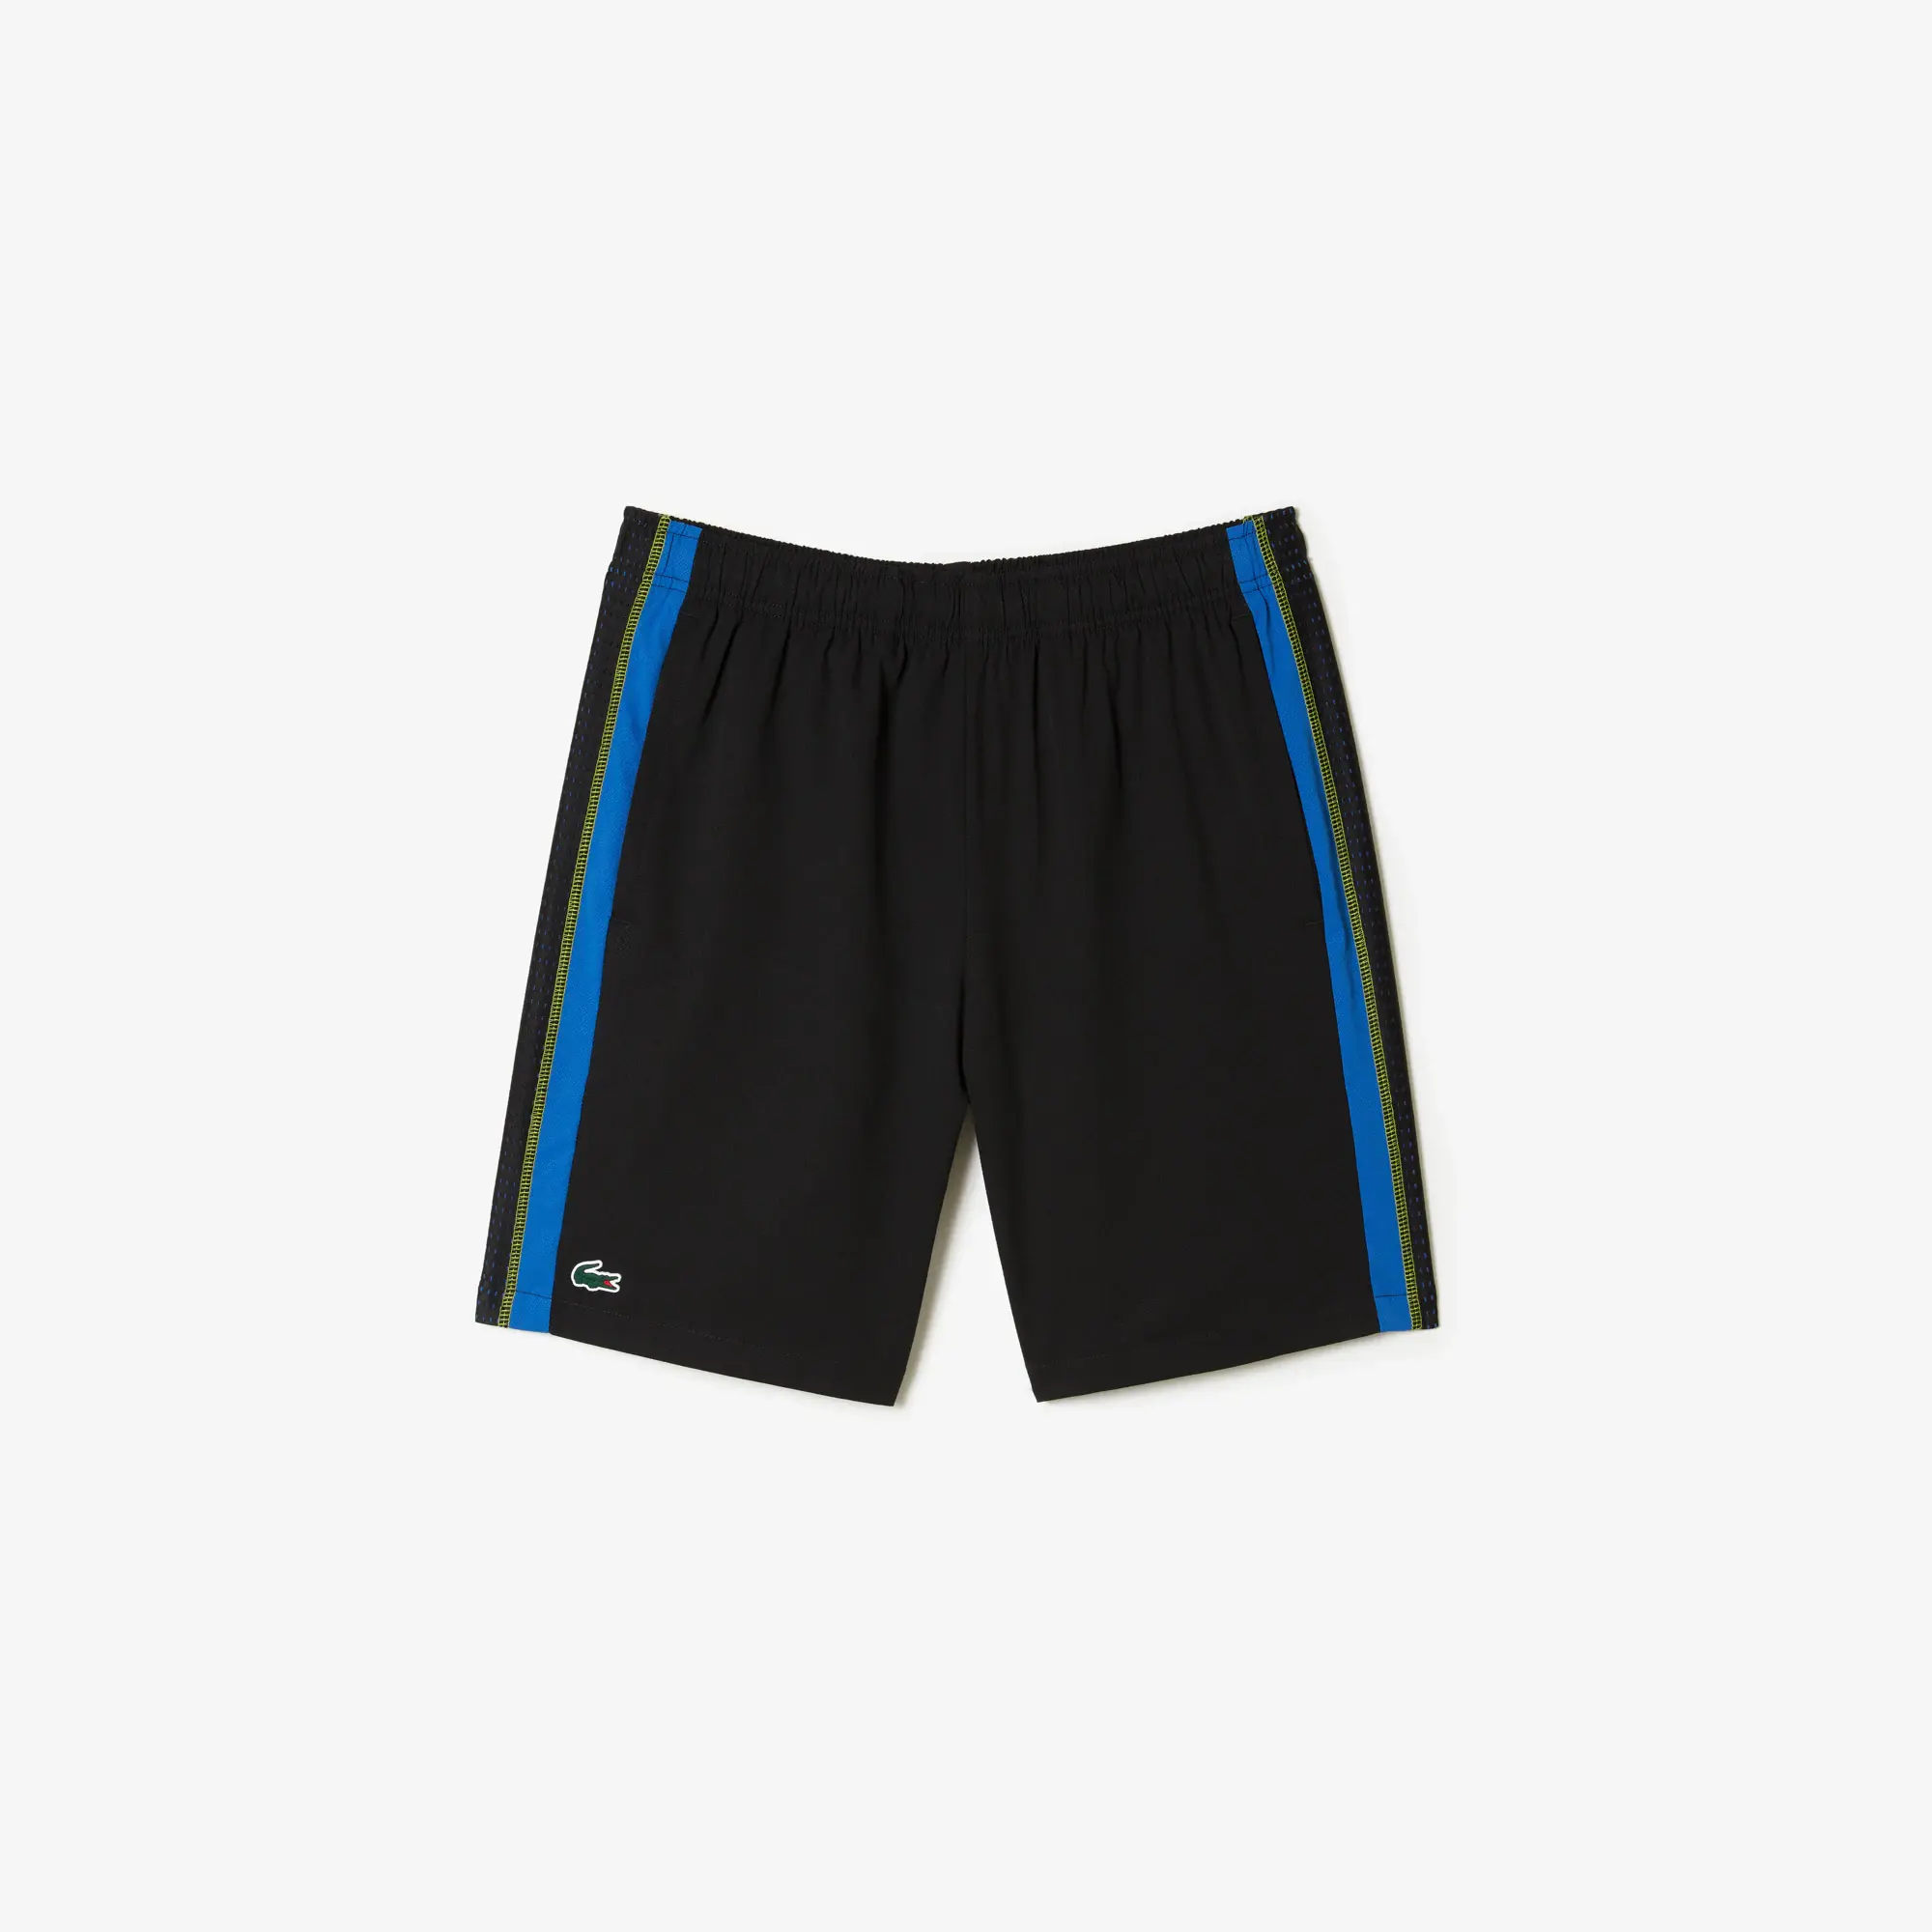 Lacoste Men’s Tennis Shorts. 2